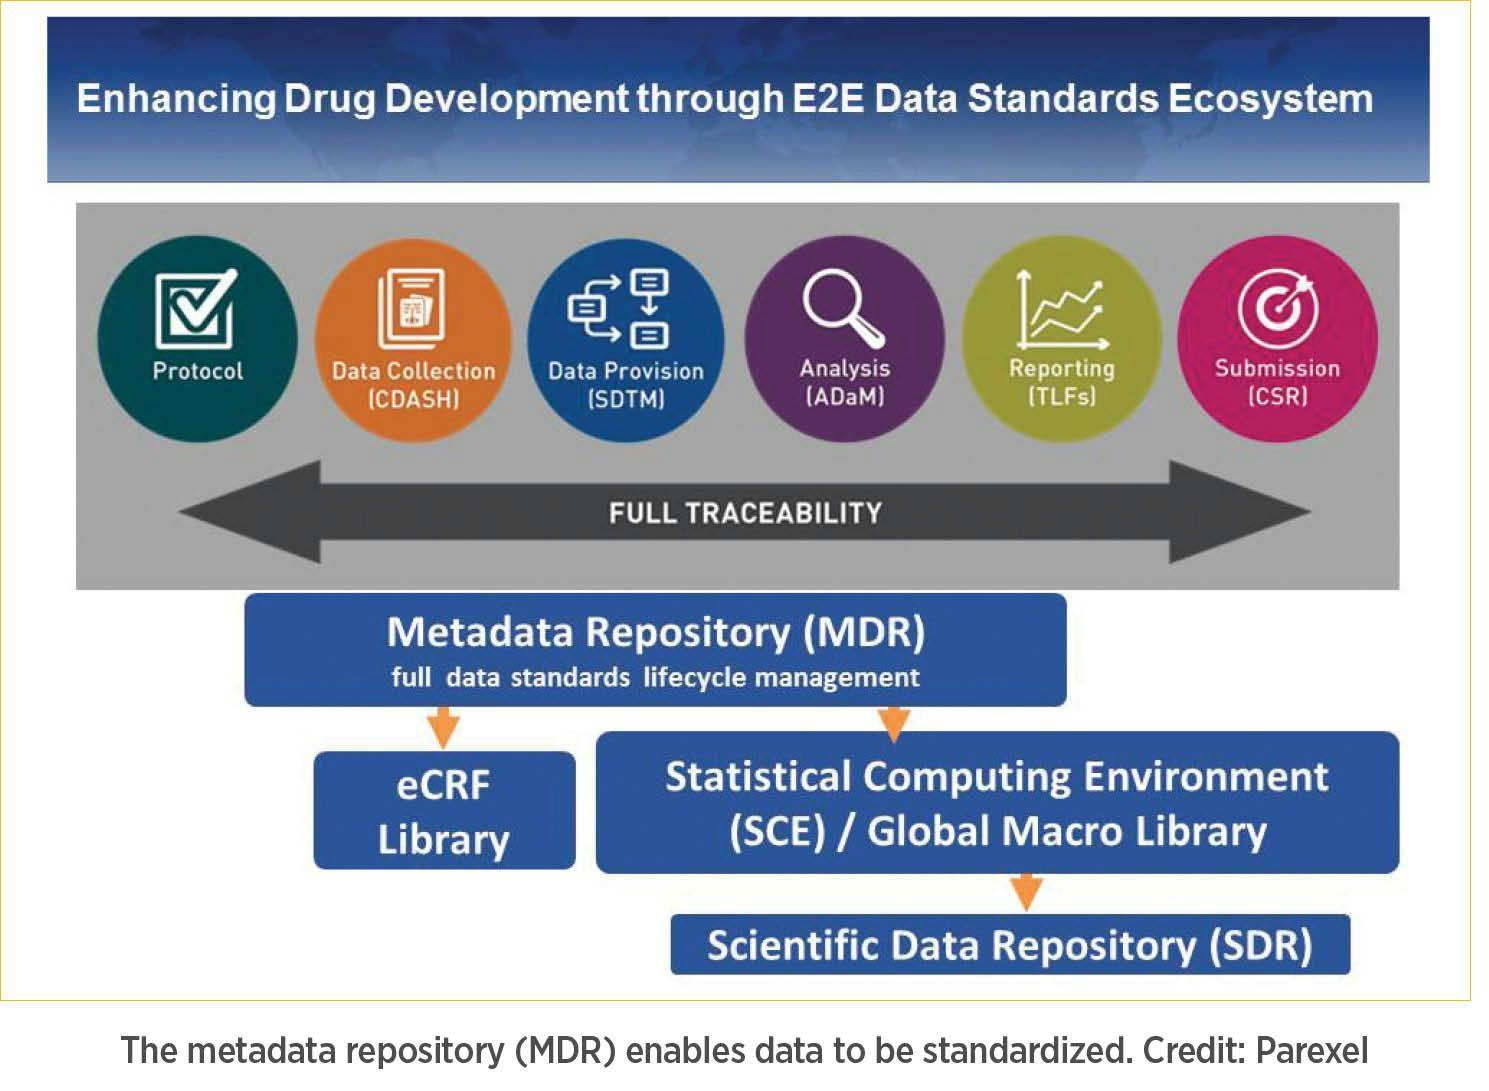 E2E Data Standards Ecosystem